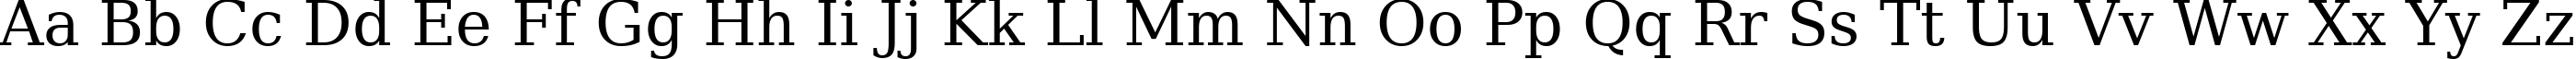 Пример написания английского алфавита шрифтом ae_Ostorah